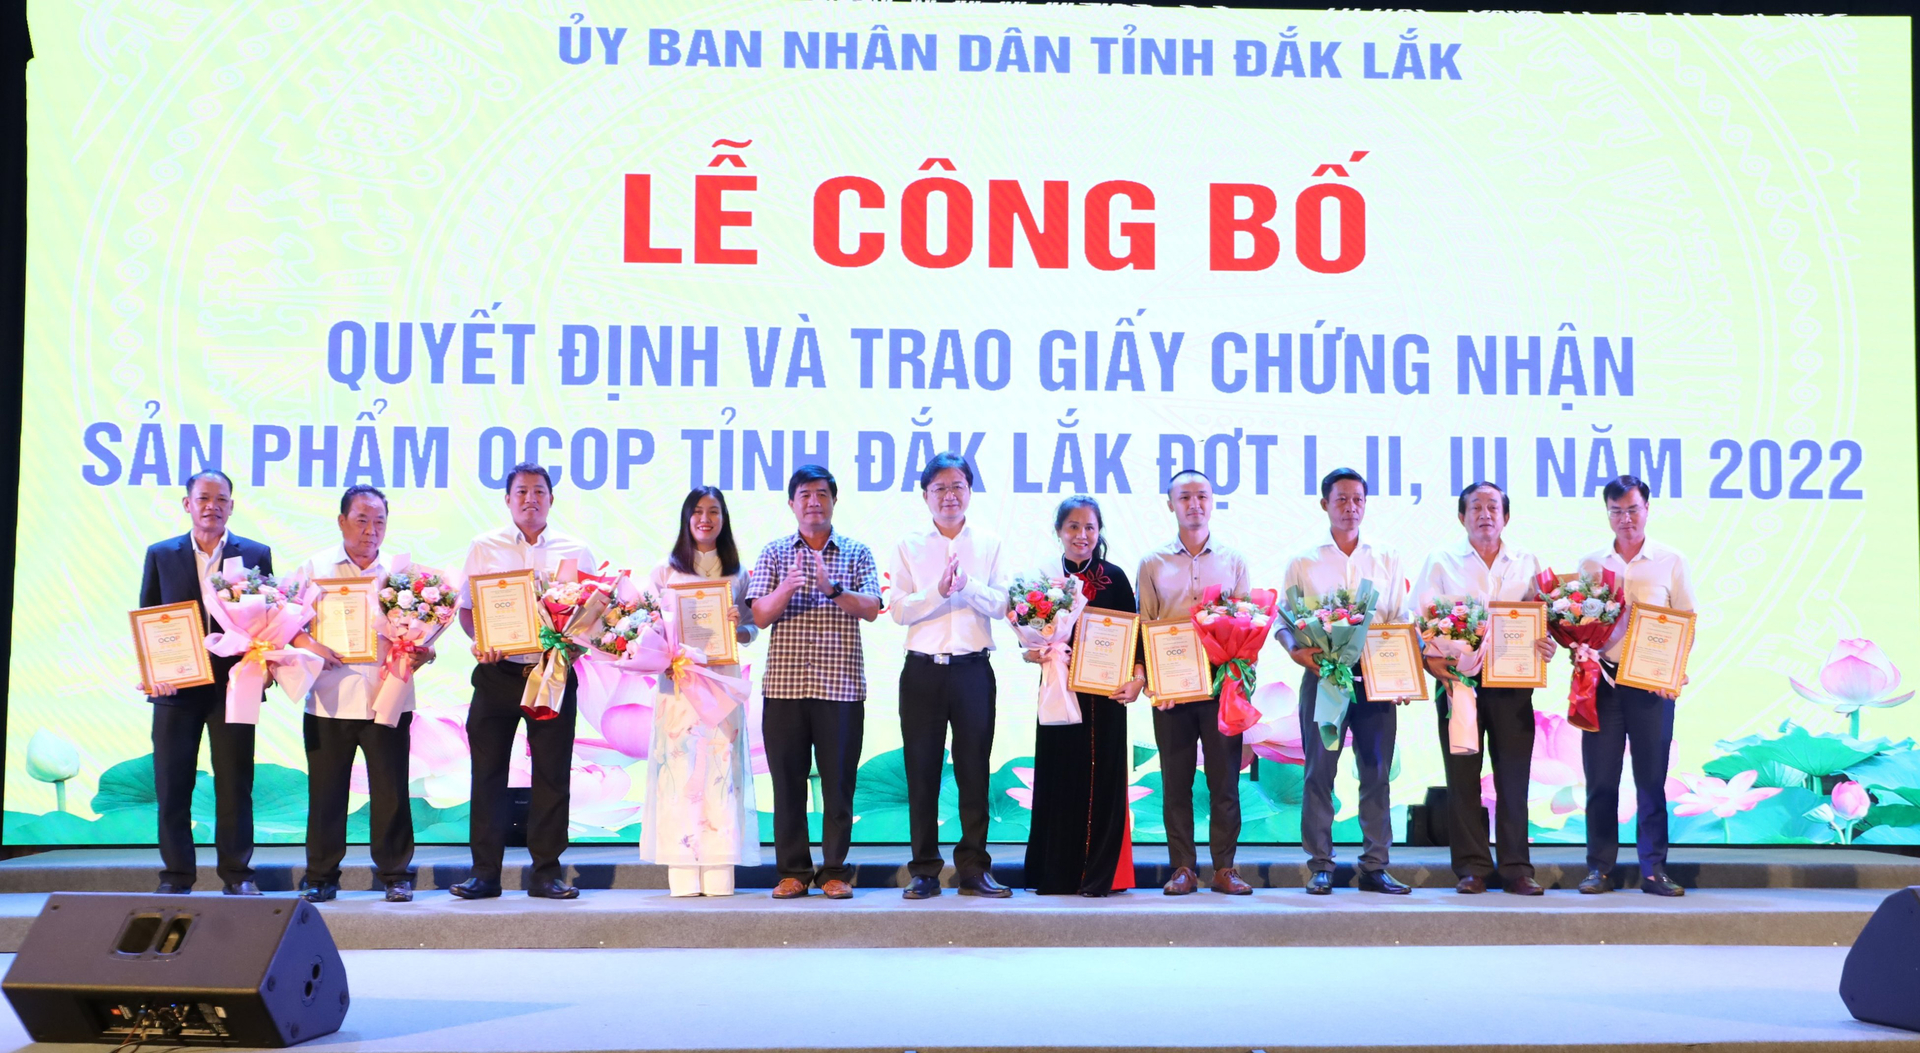 Lãnh đạo UBND tỉnh Đắk Lắk trao giấy chứng nhận OCOP 4 sao cho các chủ thể tại hội nghị. Ảnh: Quang Yên.